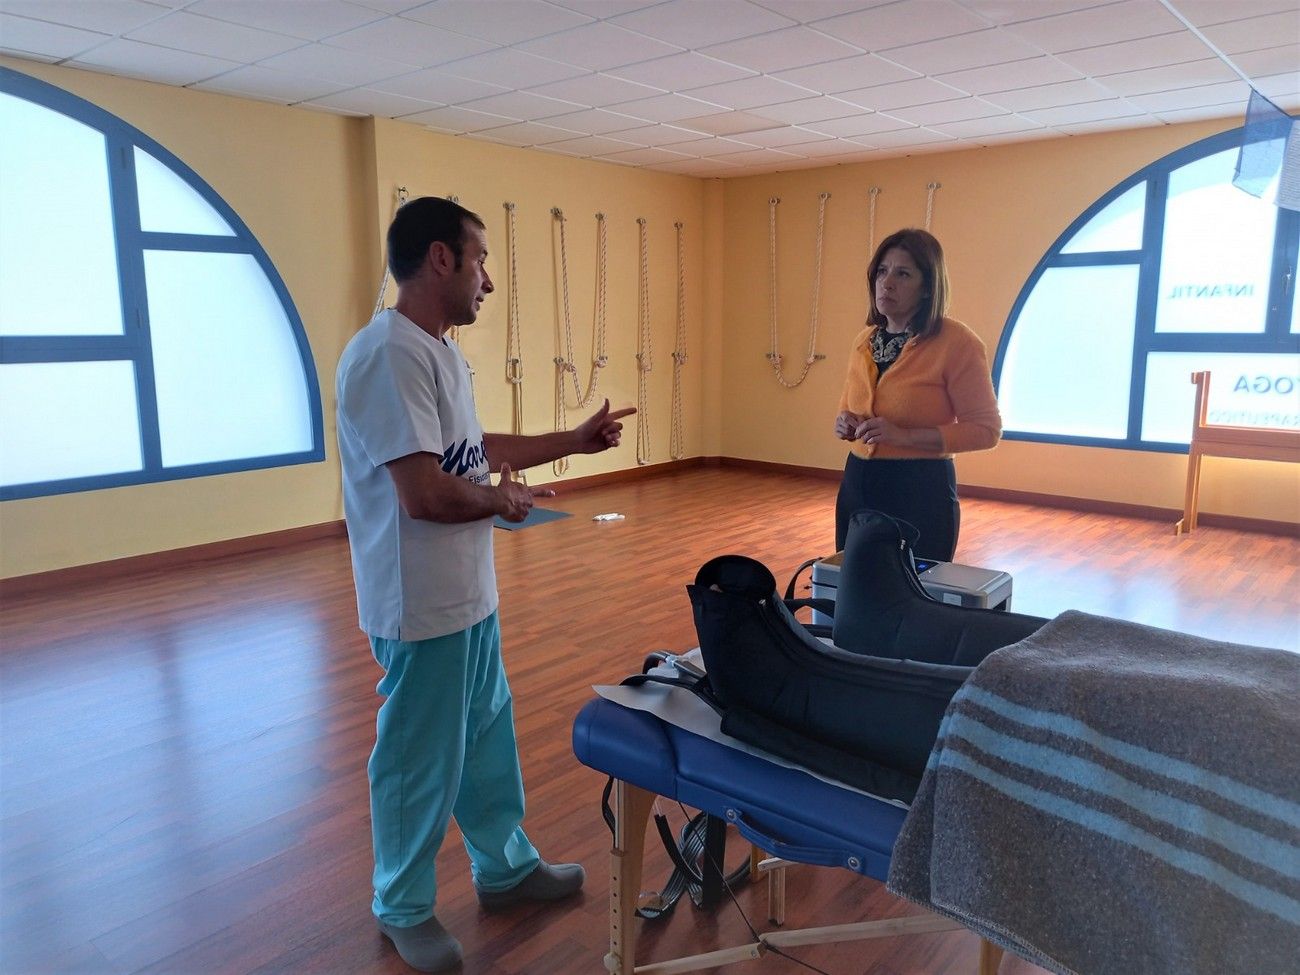 La alcaldesa de Telde visita el Centro de Fisioterapia Deportiva Mare, con tecnología puntera en Canarias